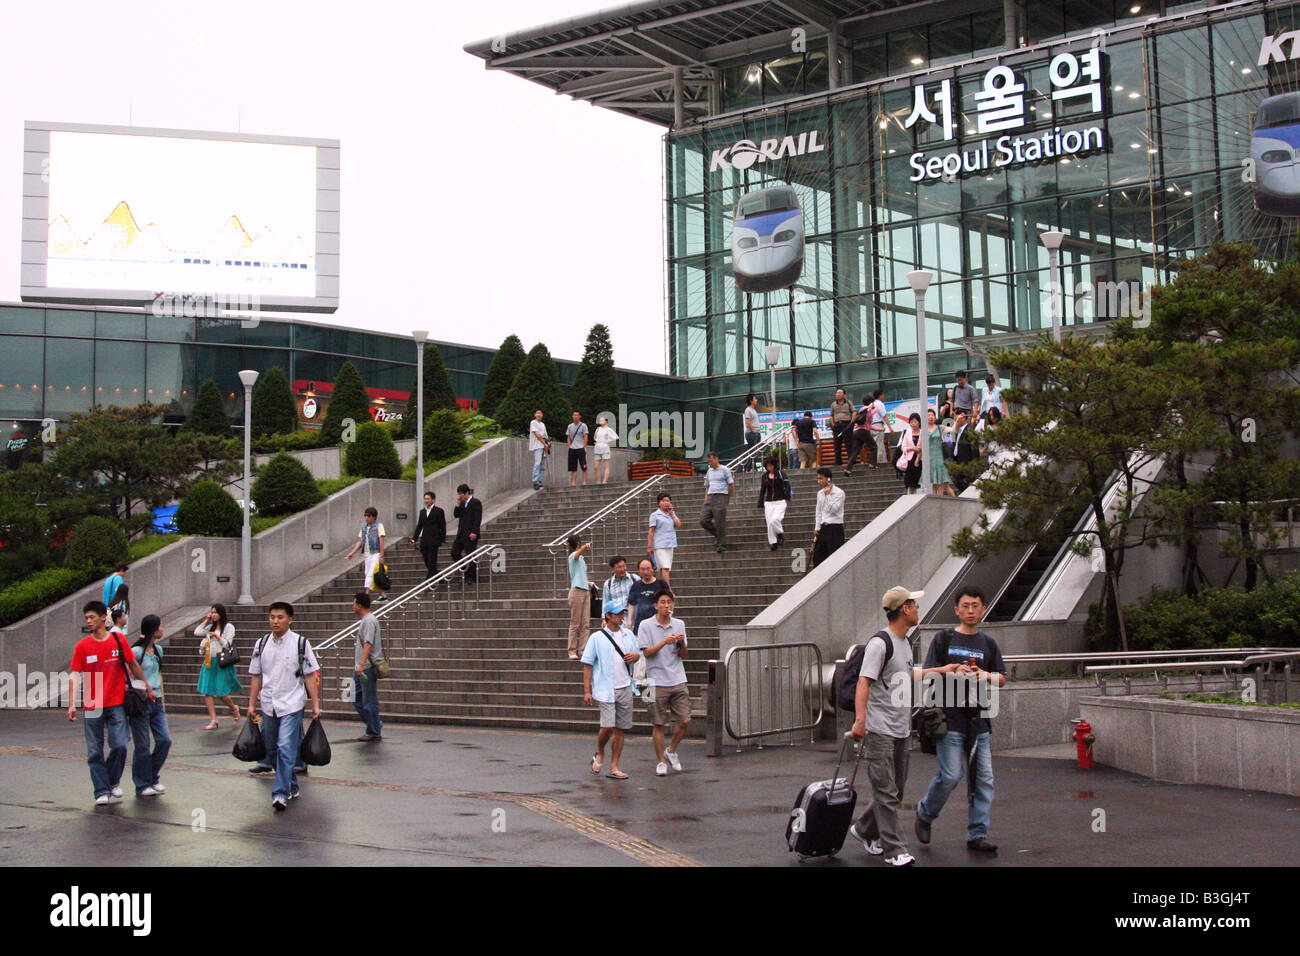 زيارة إلى كوريا الجنوبية في شهر أغسطس .. - شبكة و منتديات العرب المسافرون